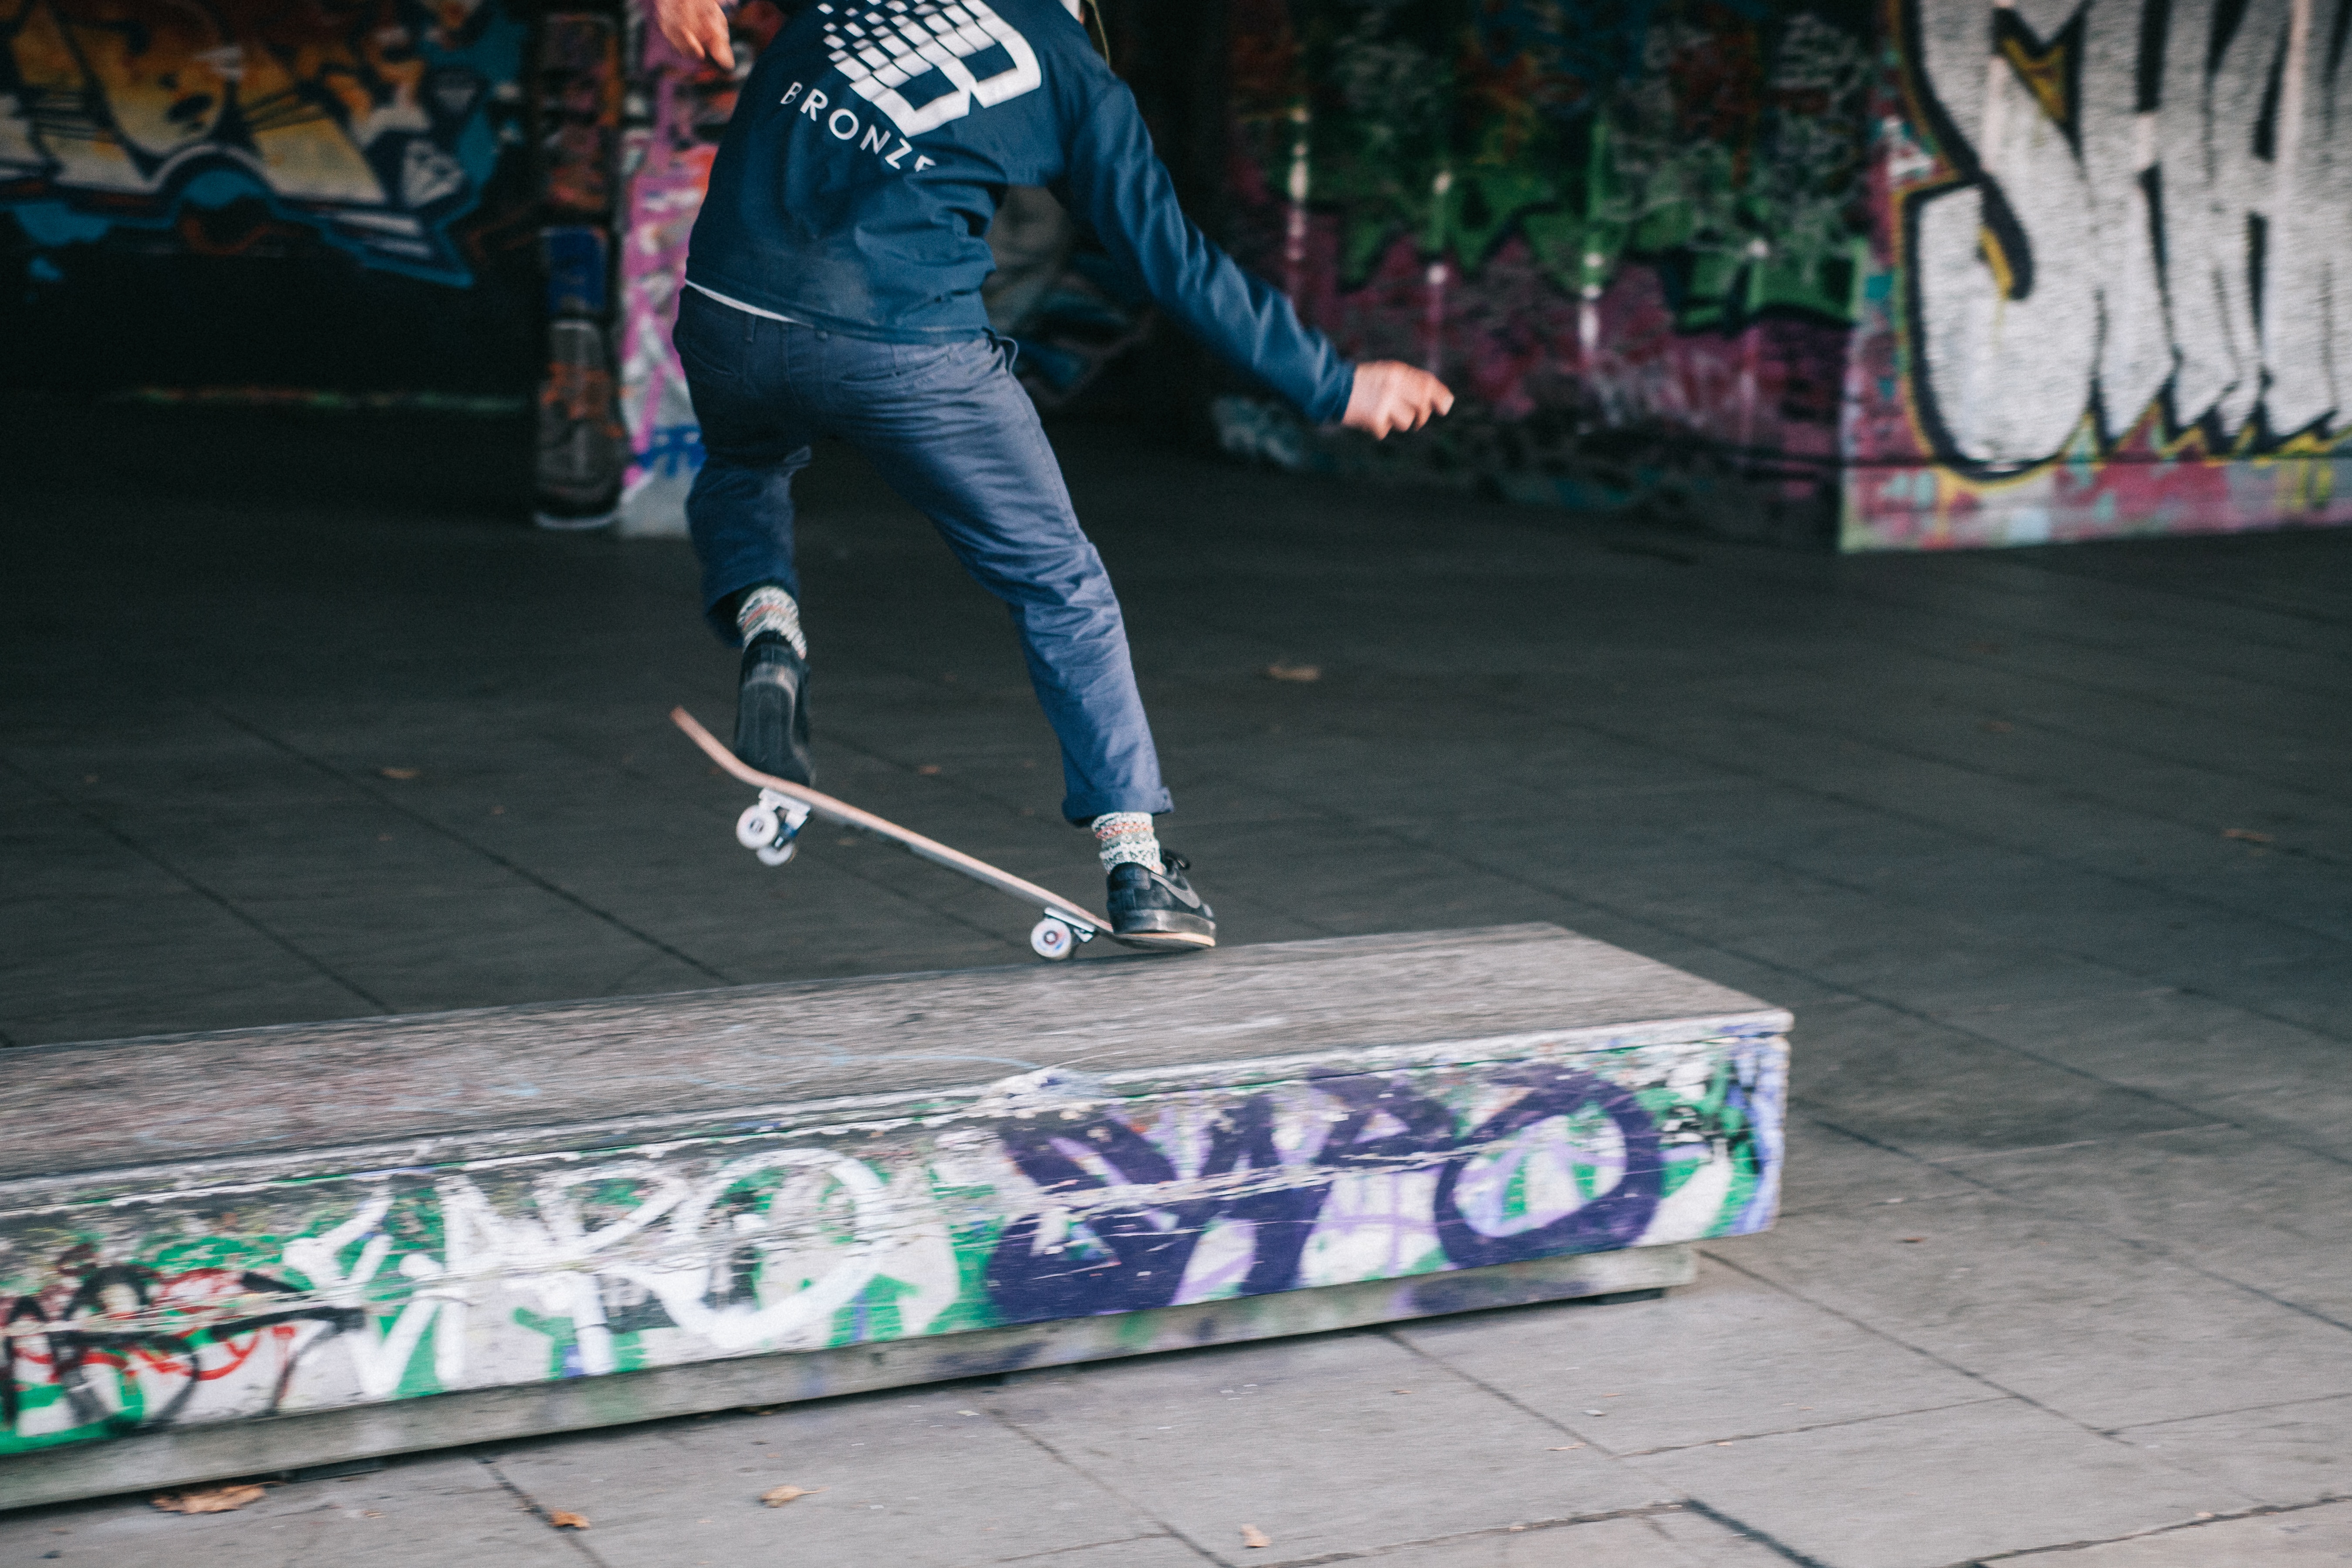 man doing a skateboard grind trick